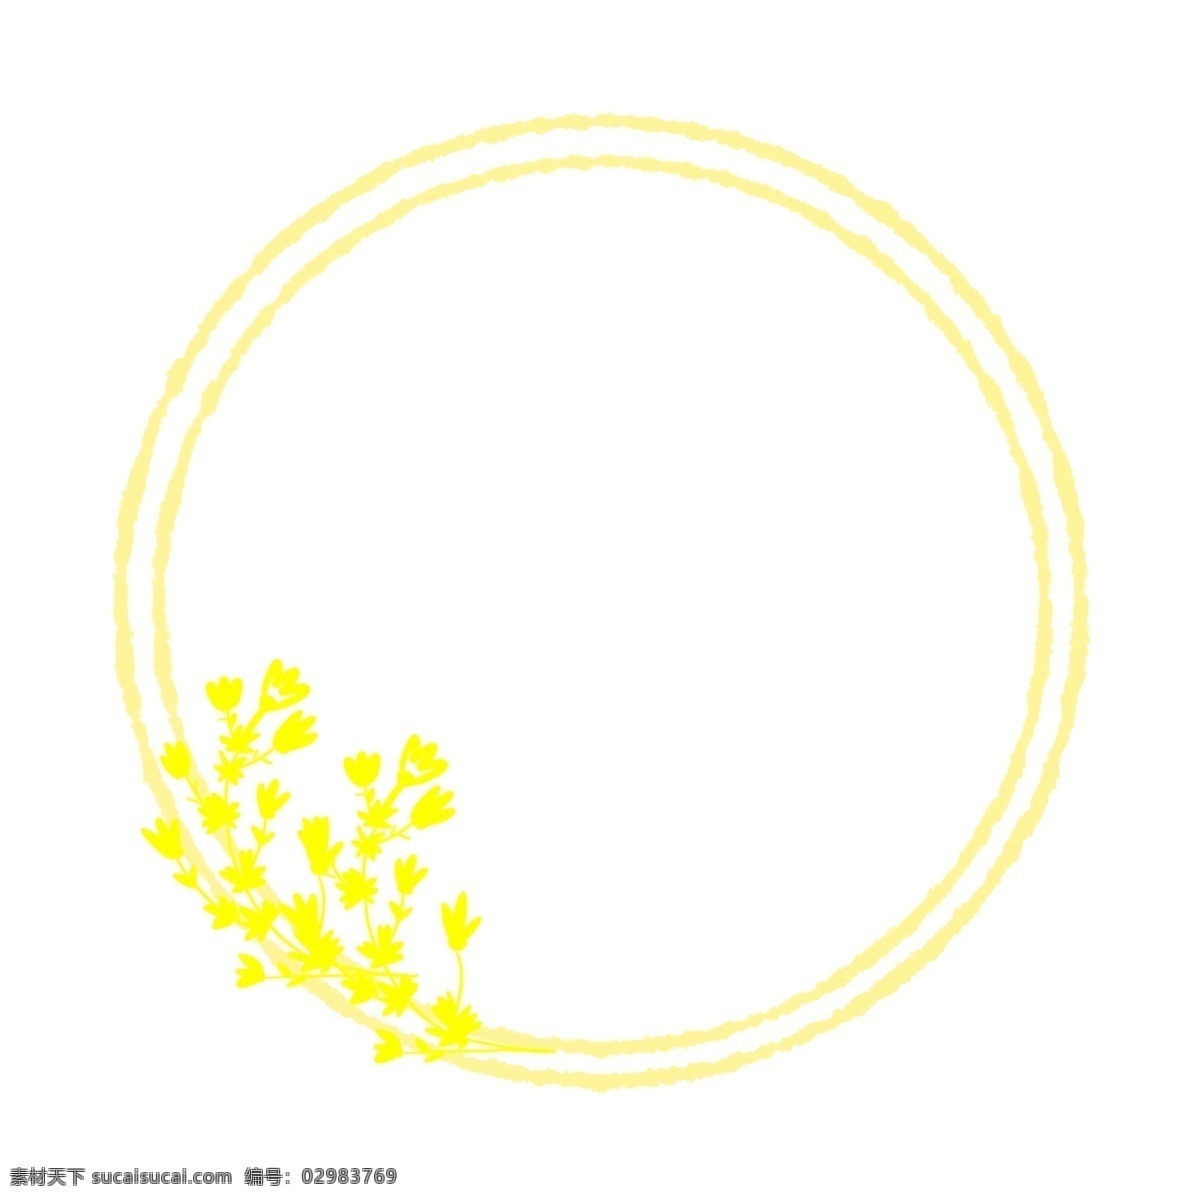 圆形 花纹 边框 黄色的花朵 卡通边框 美丽边框 漂亮边框 小物边框 花草边框 圆形的边框